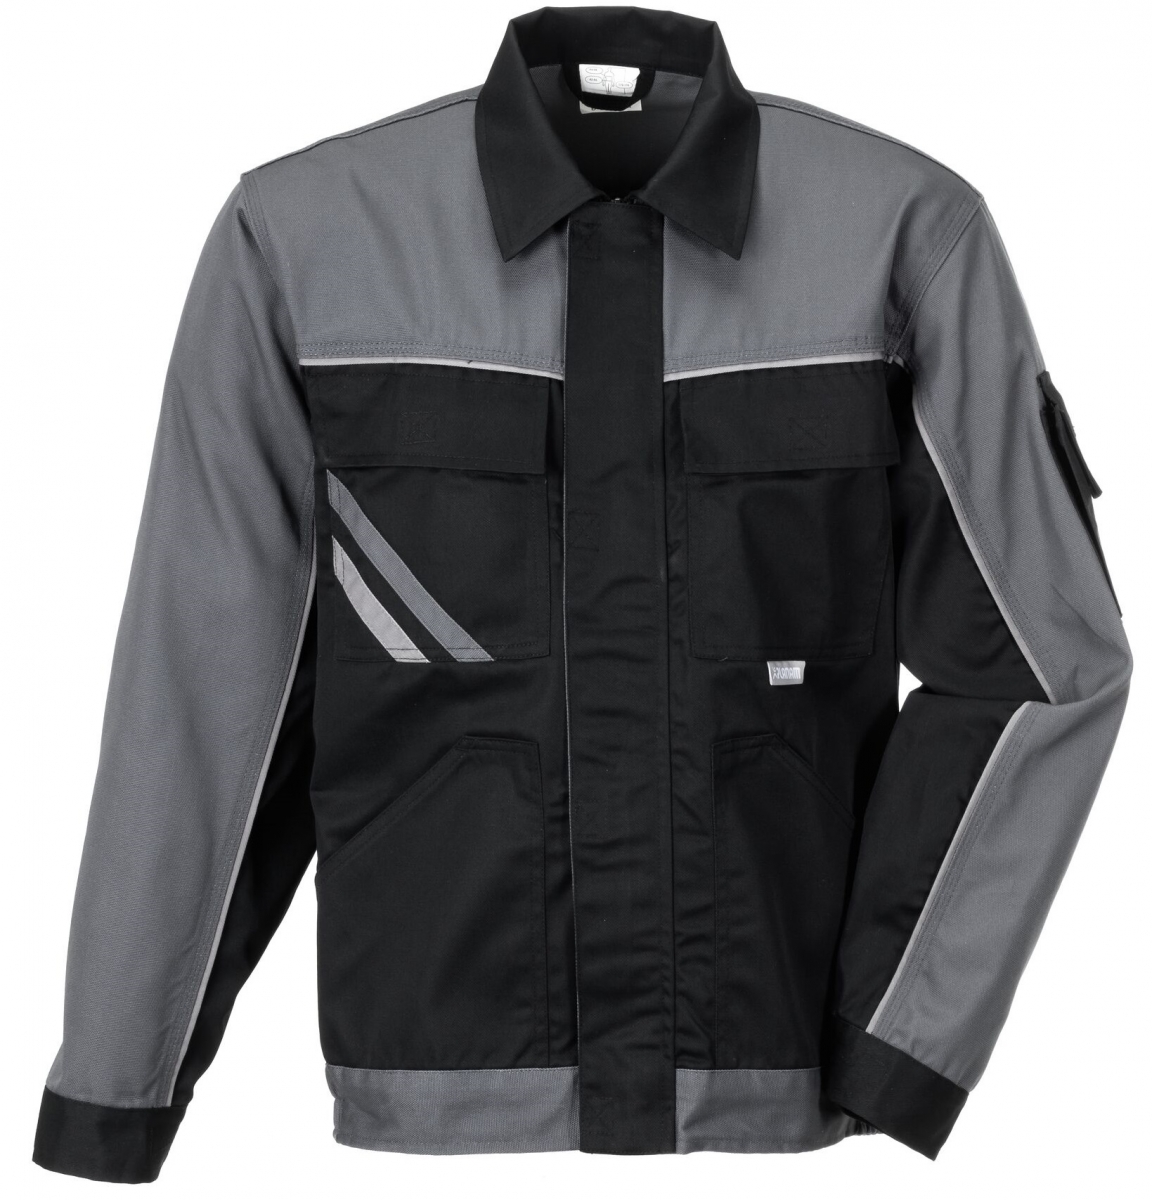 PLANAM-Workwear, Bundjacke, Highline, 285 g/m, schwarz/schiefer/zink